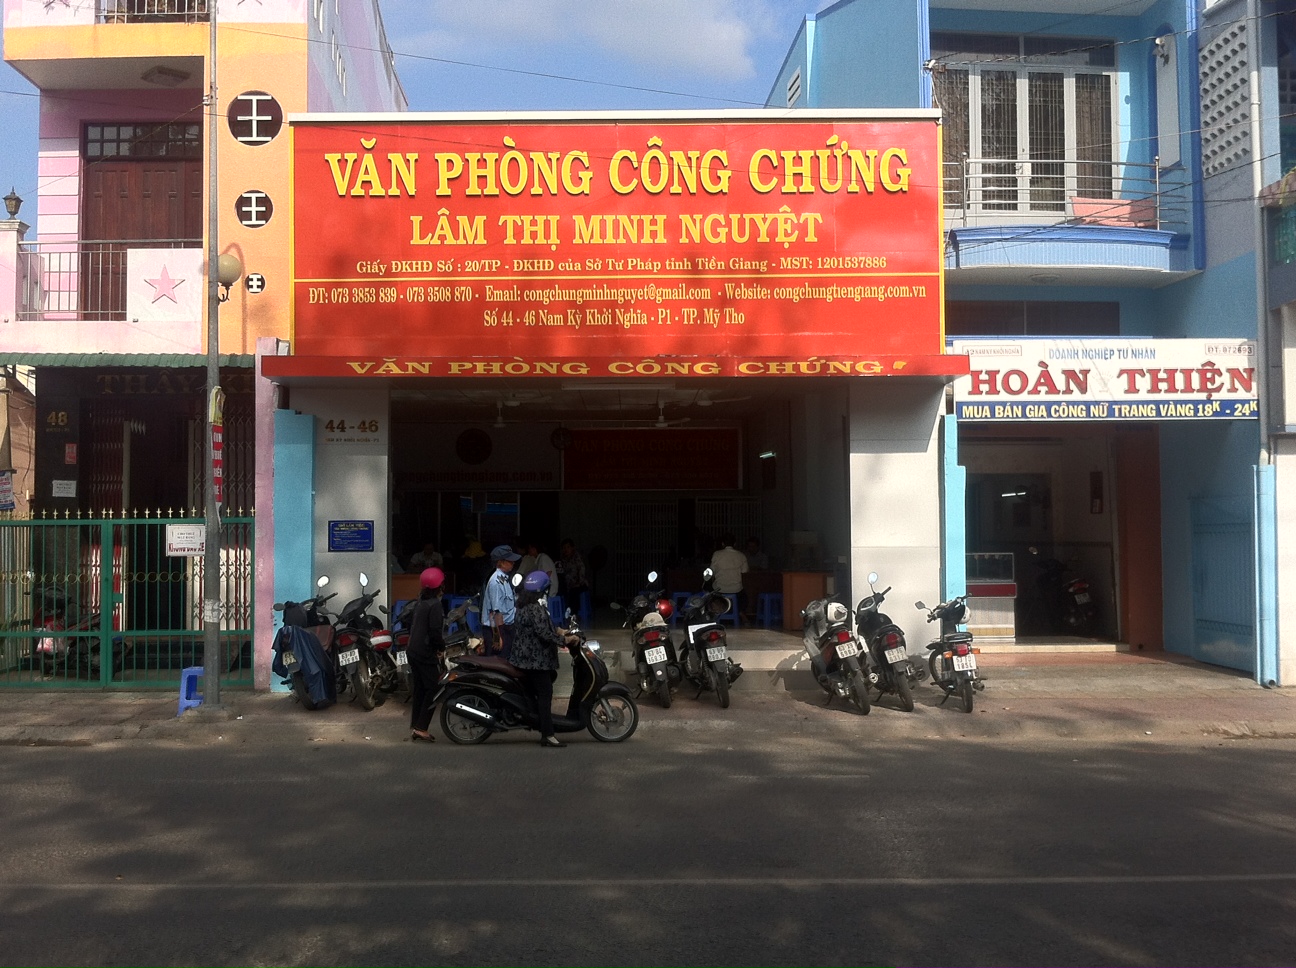 Liên hệ Văn phòng công chứng Lâm Thị Minh Nguyệt thông tin địa chỉ số điện thoại